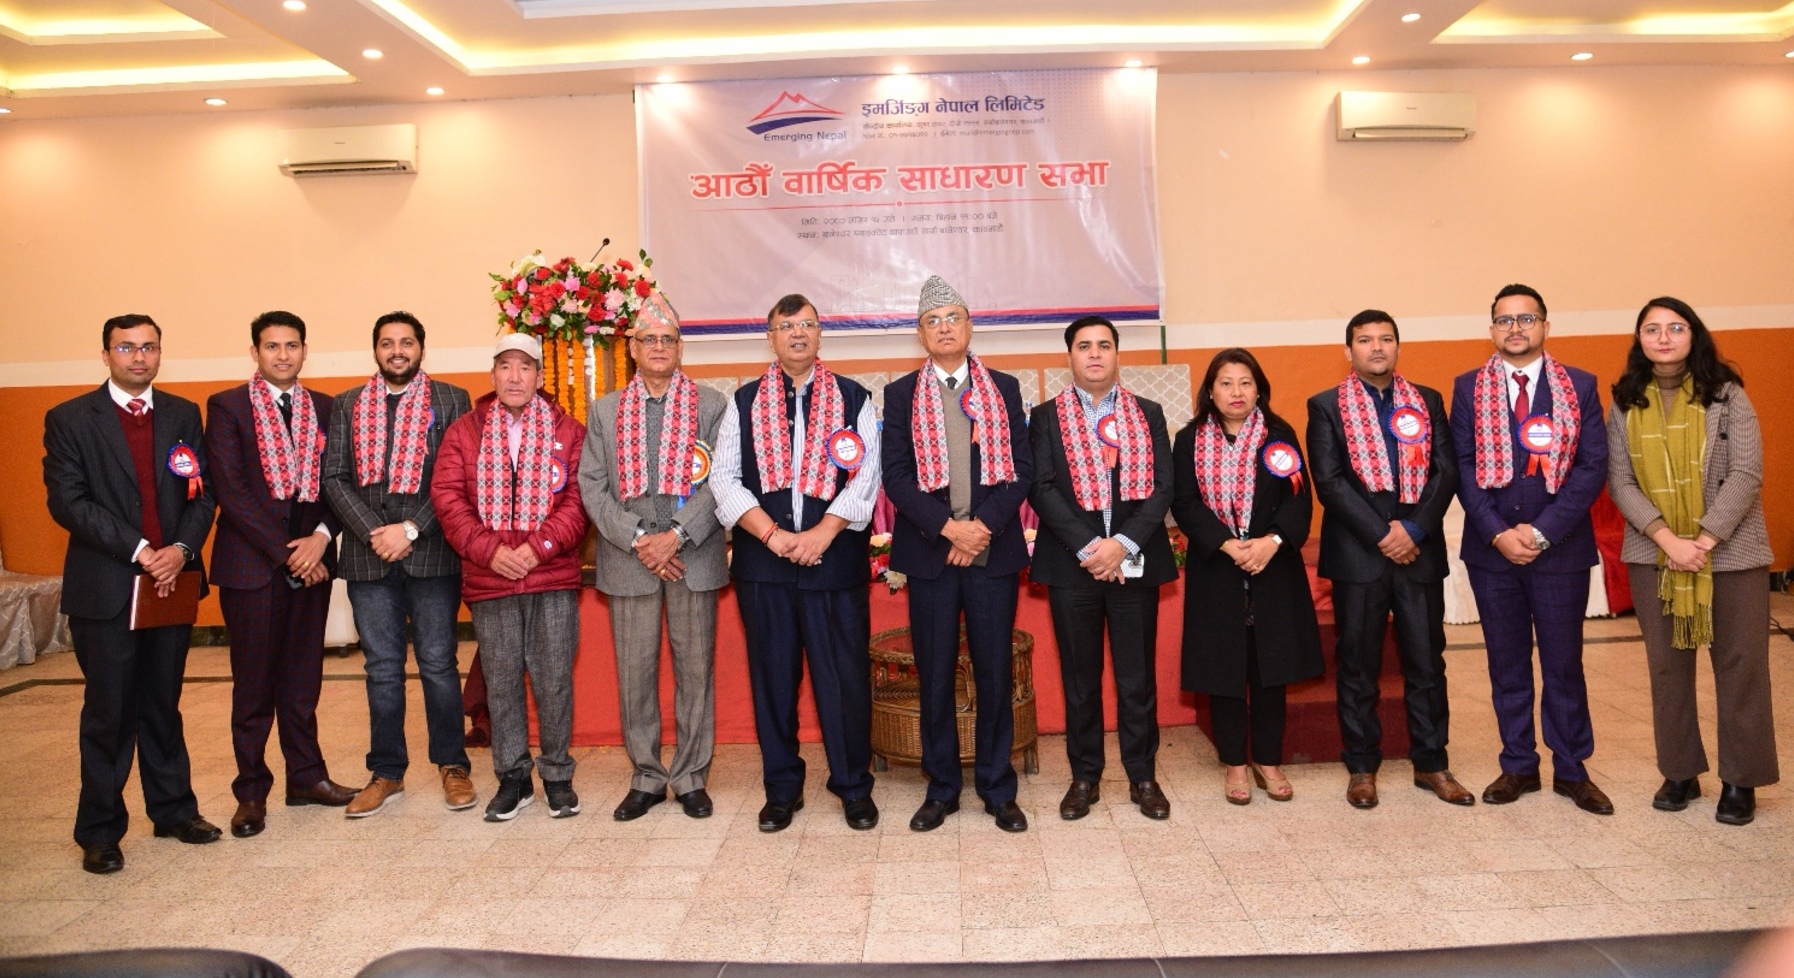 इमर्जिङ्ग नेपाल लिमिटेडको आठौँ वार्षिक साधारण सभा सम्पन्न, नगद लाभांश पारित